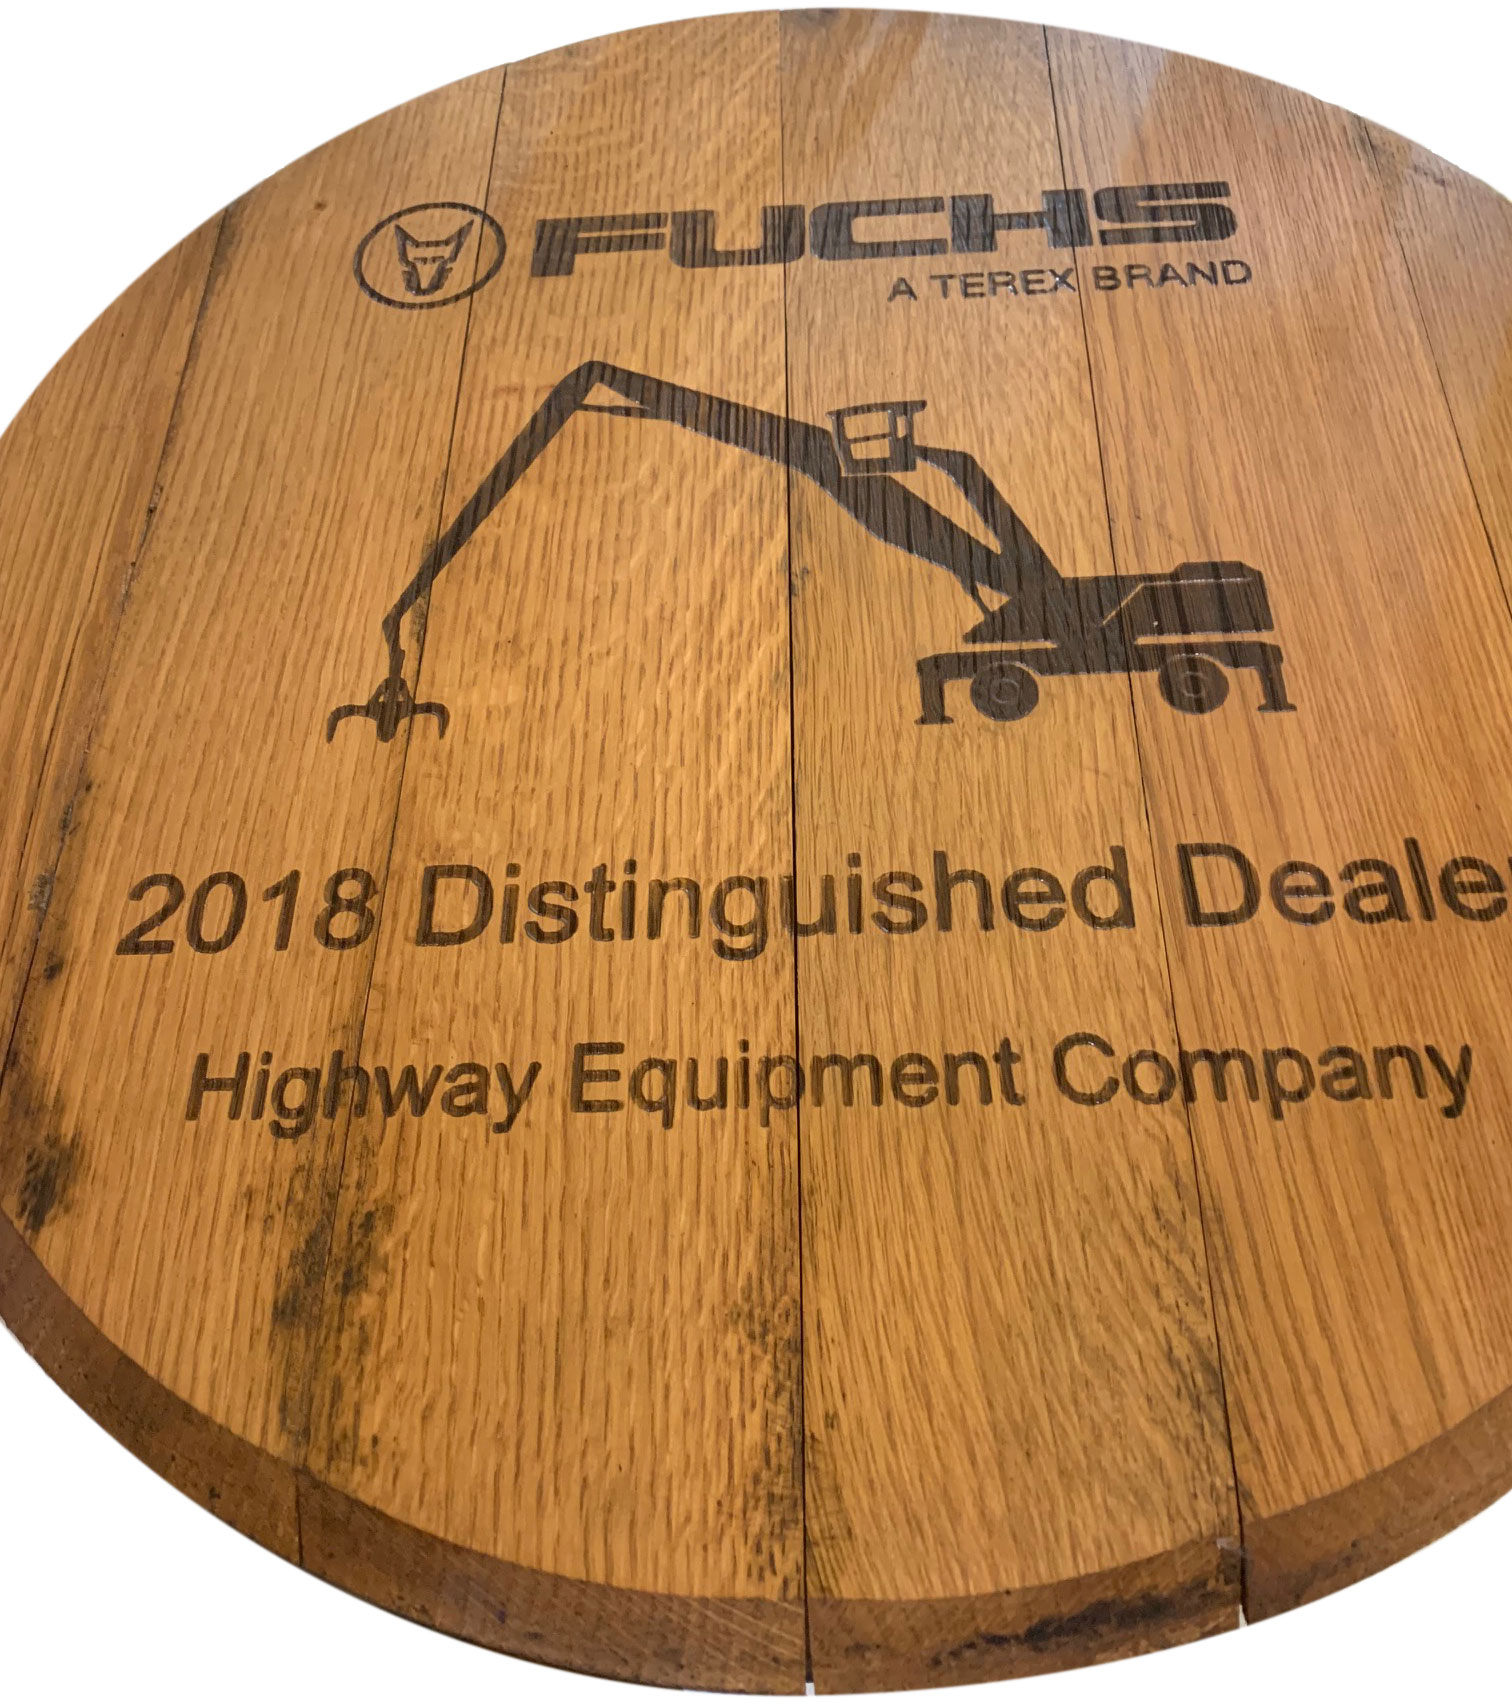 Fuchs Distinguished Dealer Award